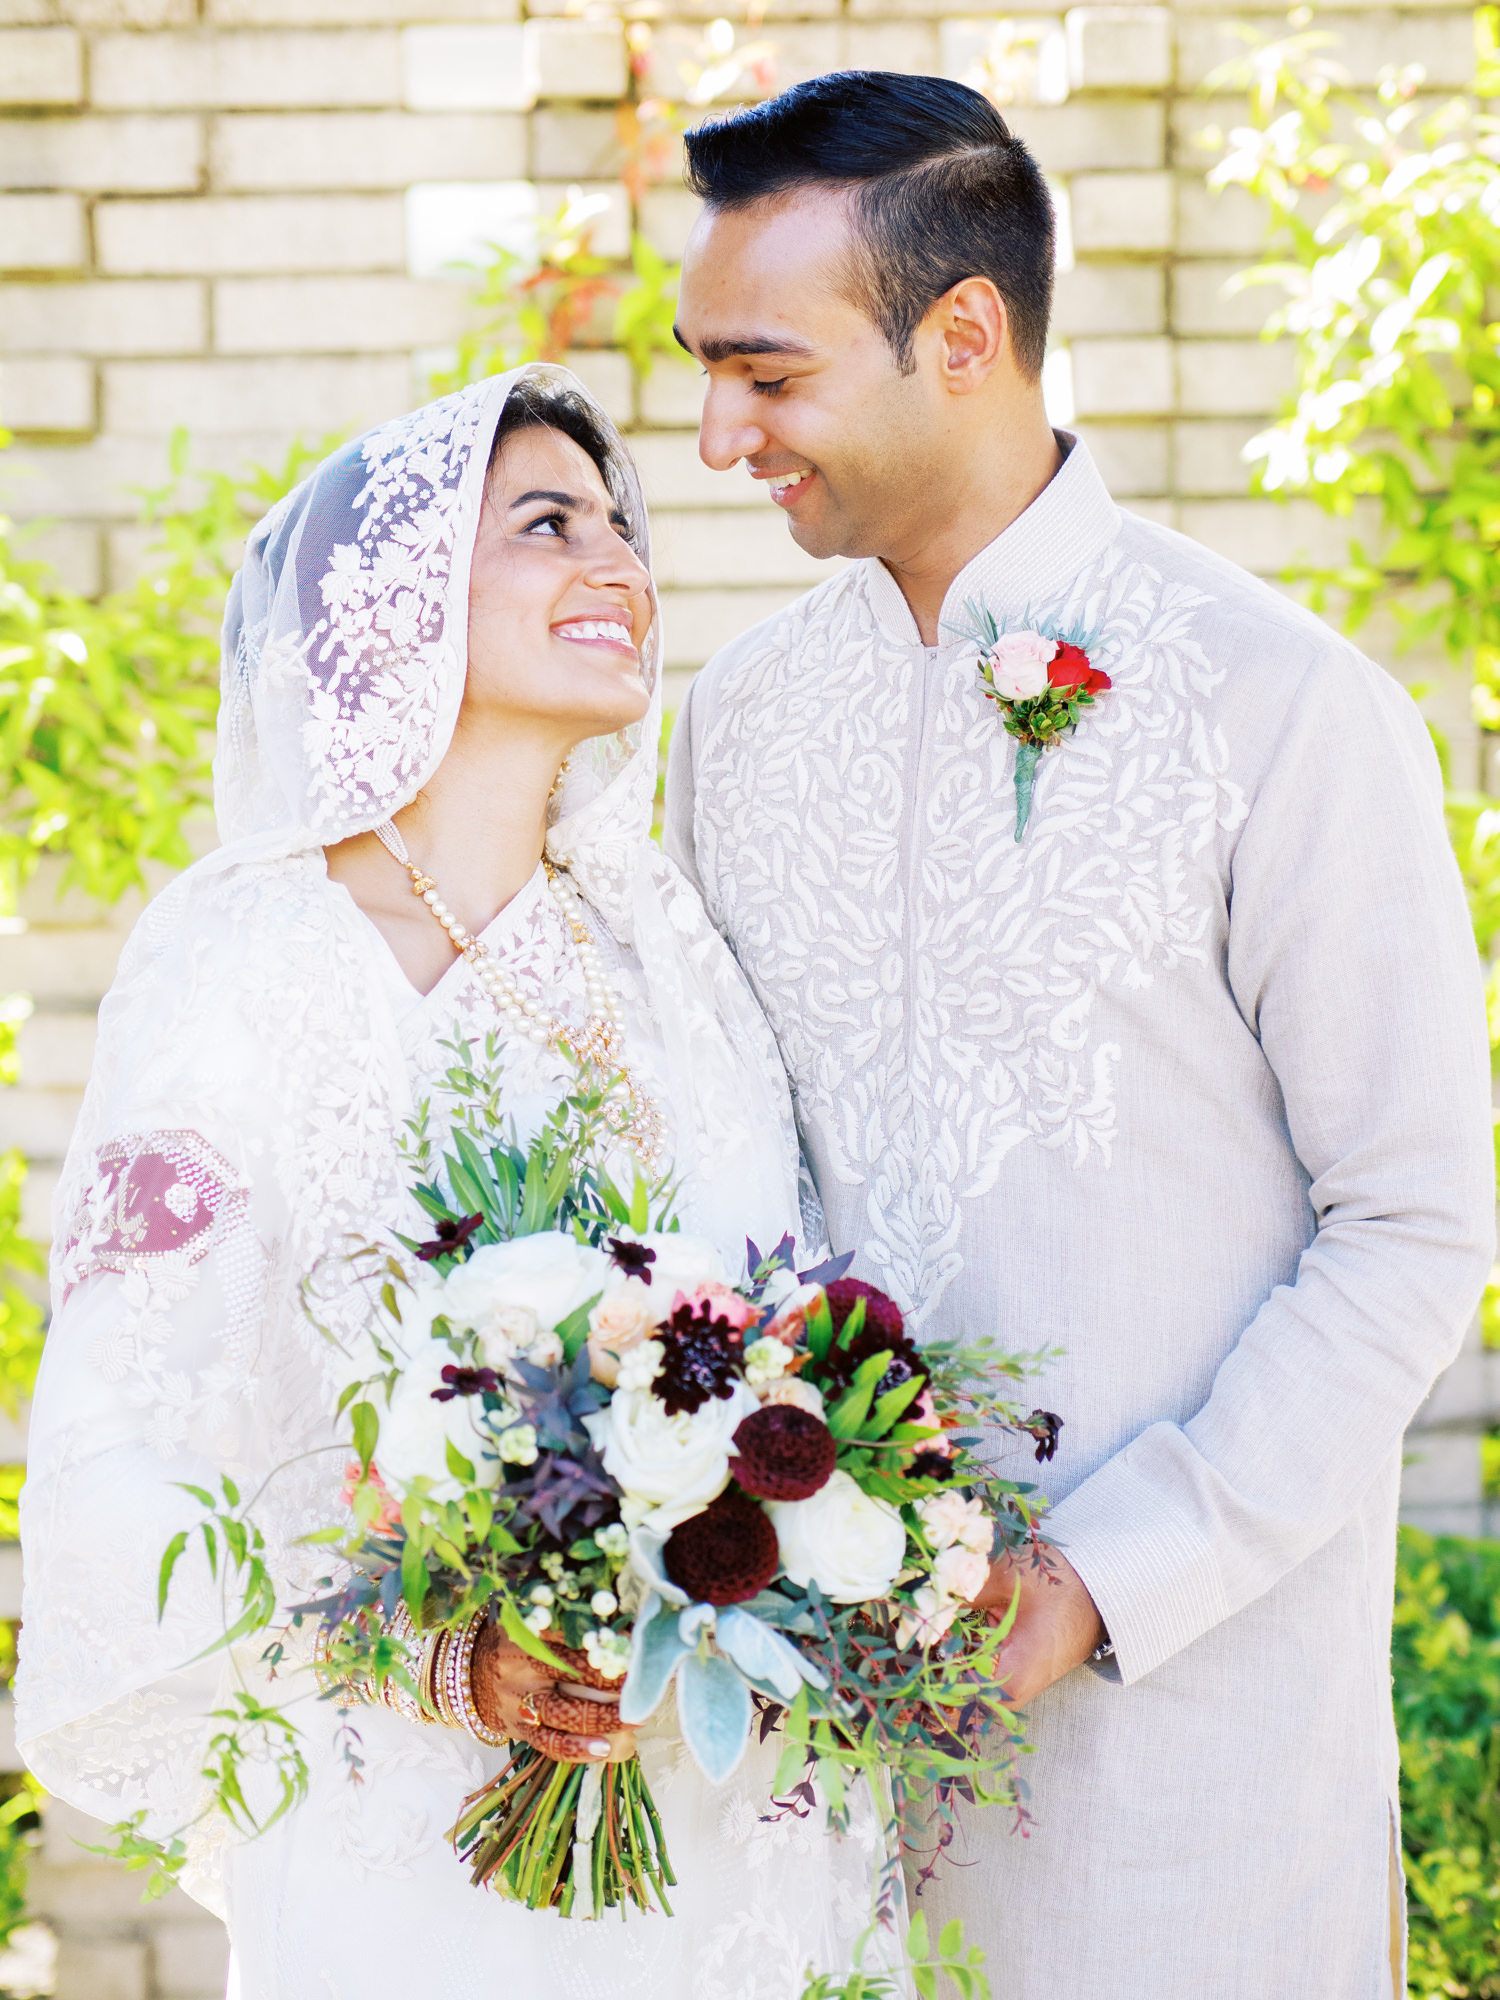 Married! Iman Center Kirkland nikkah